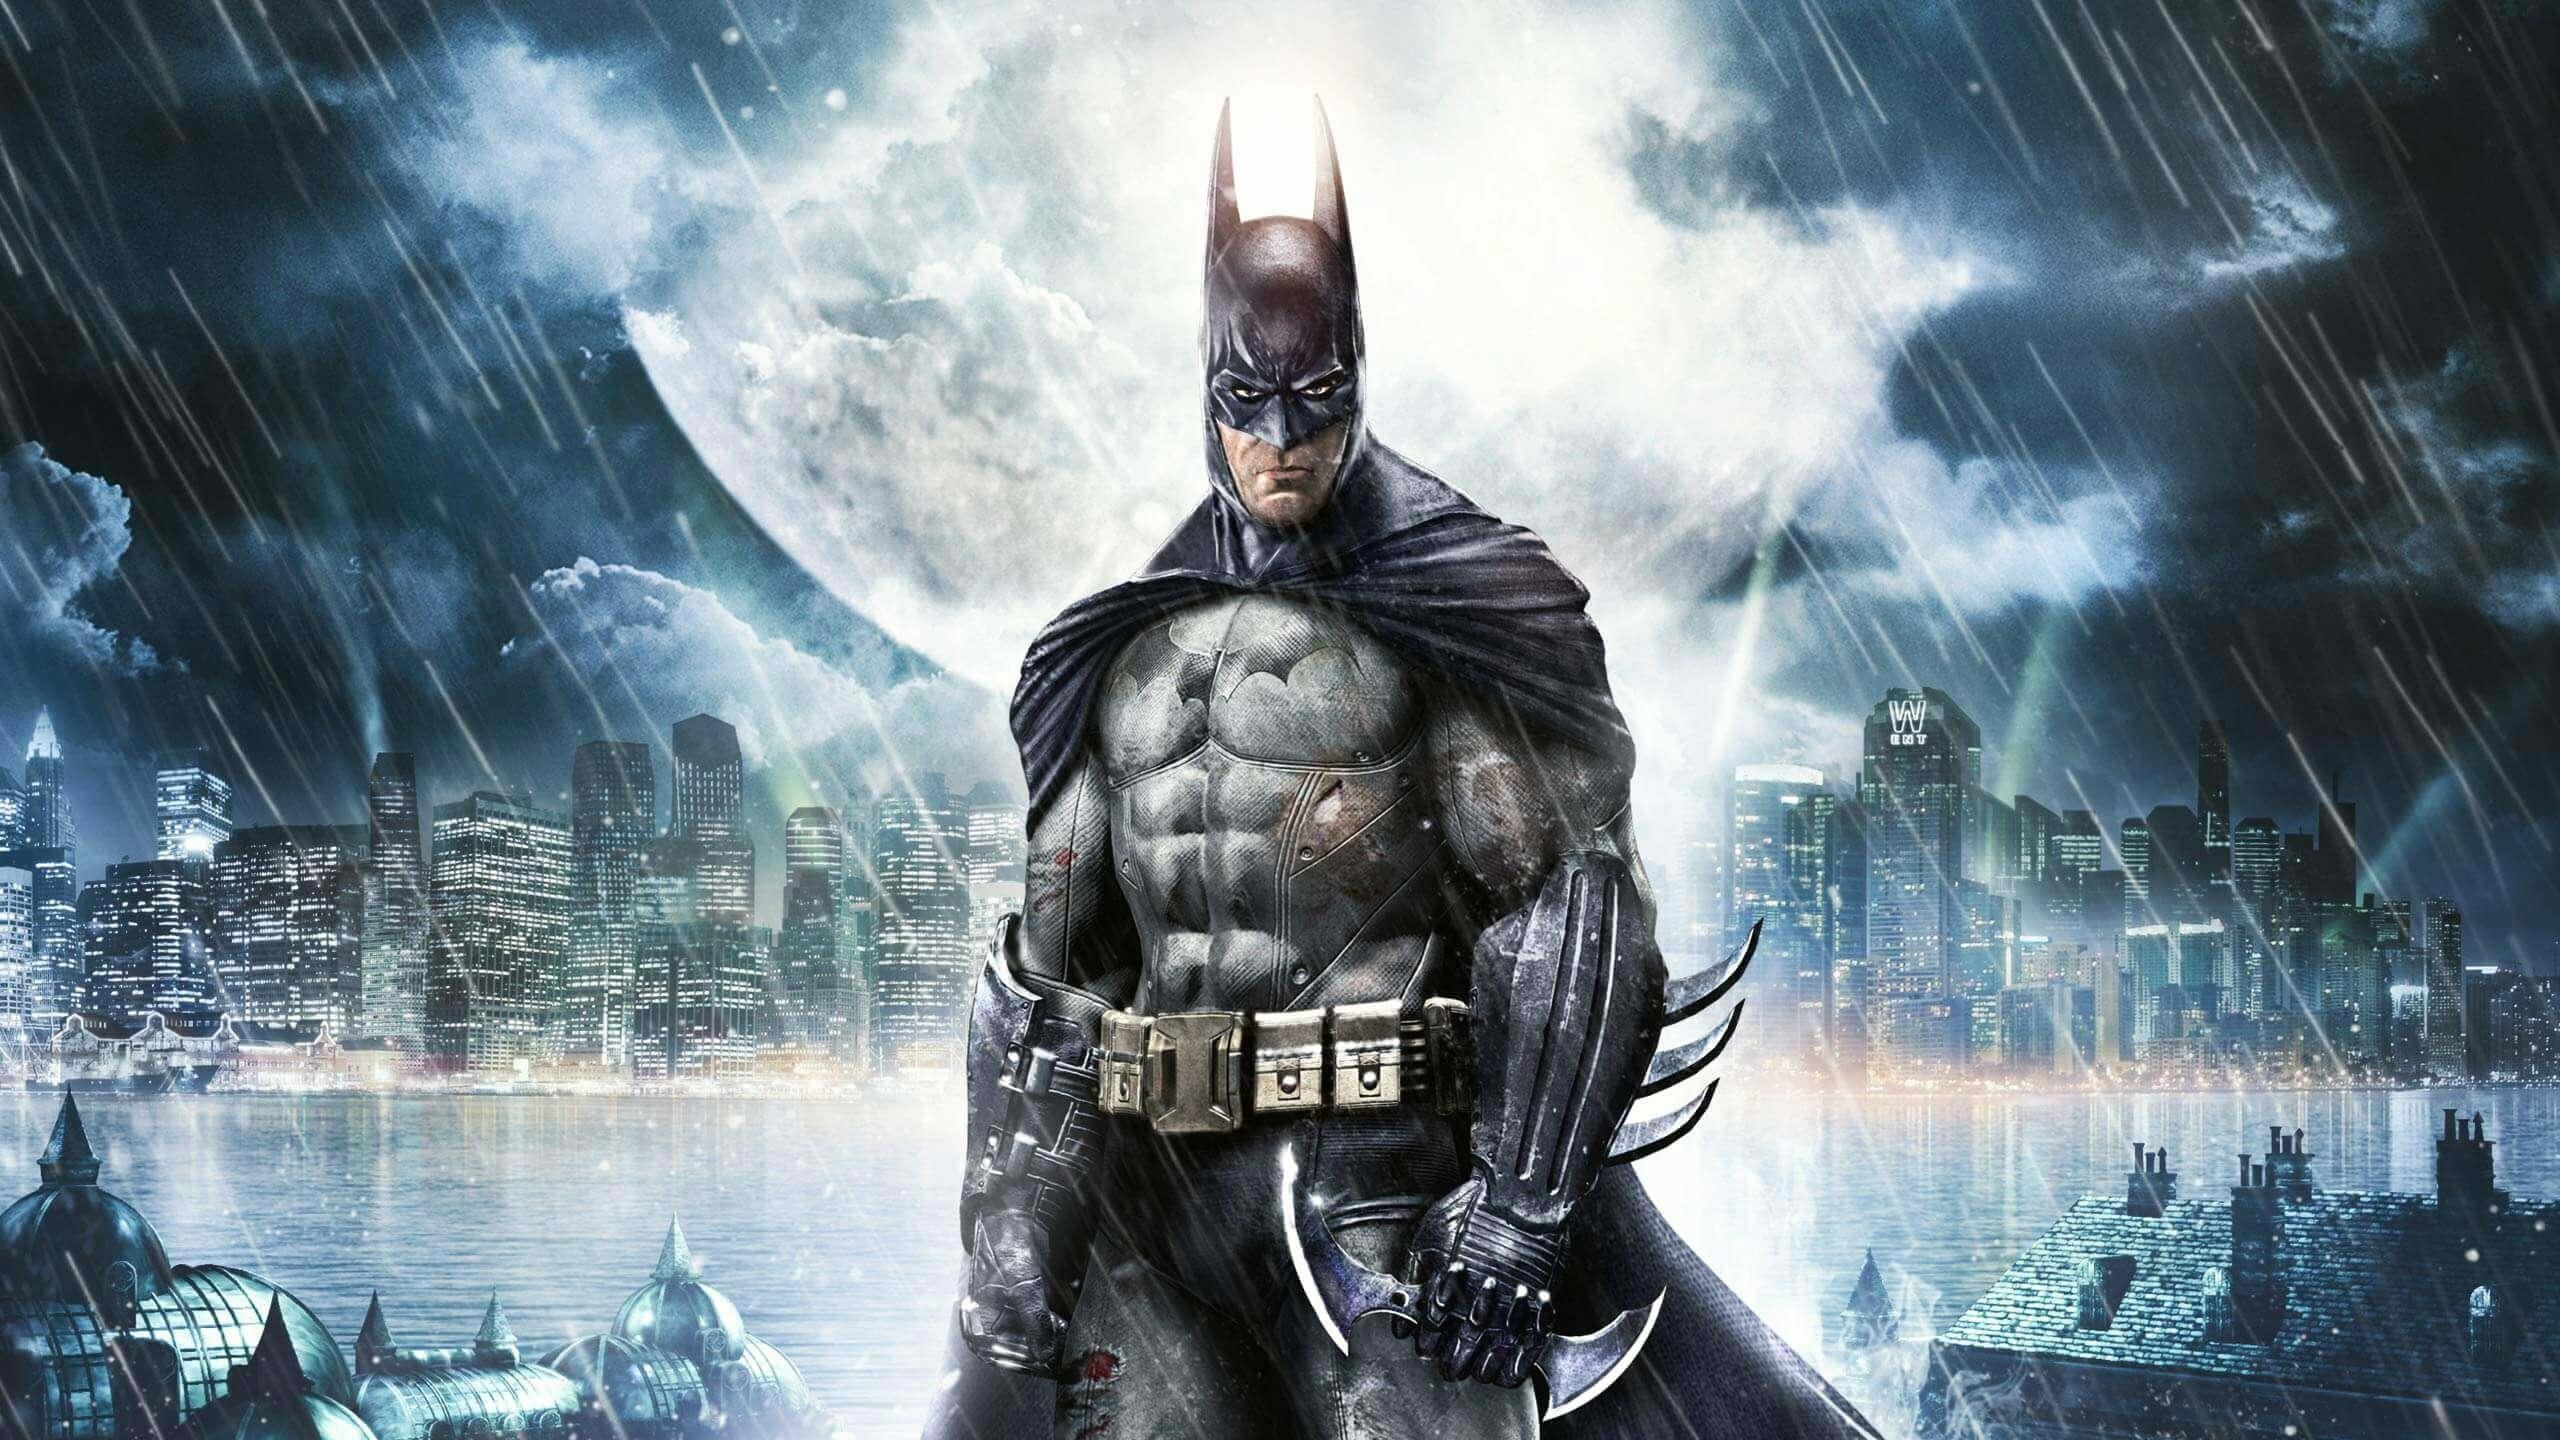 Batman: Arkham Asylum — GOTY